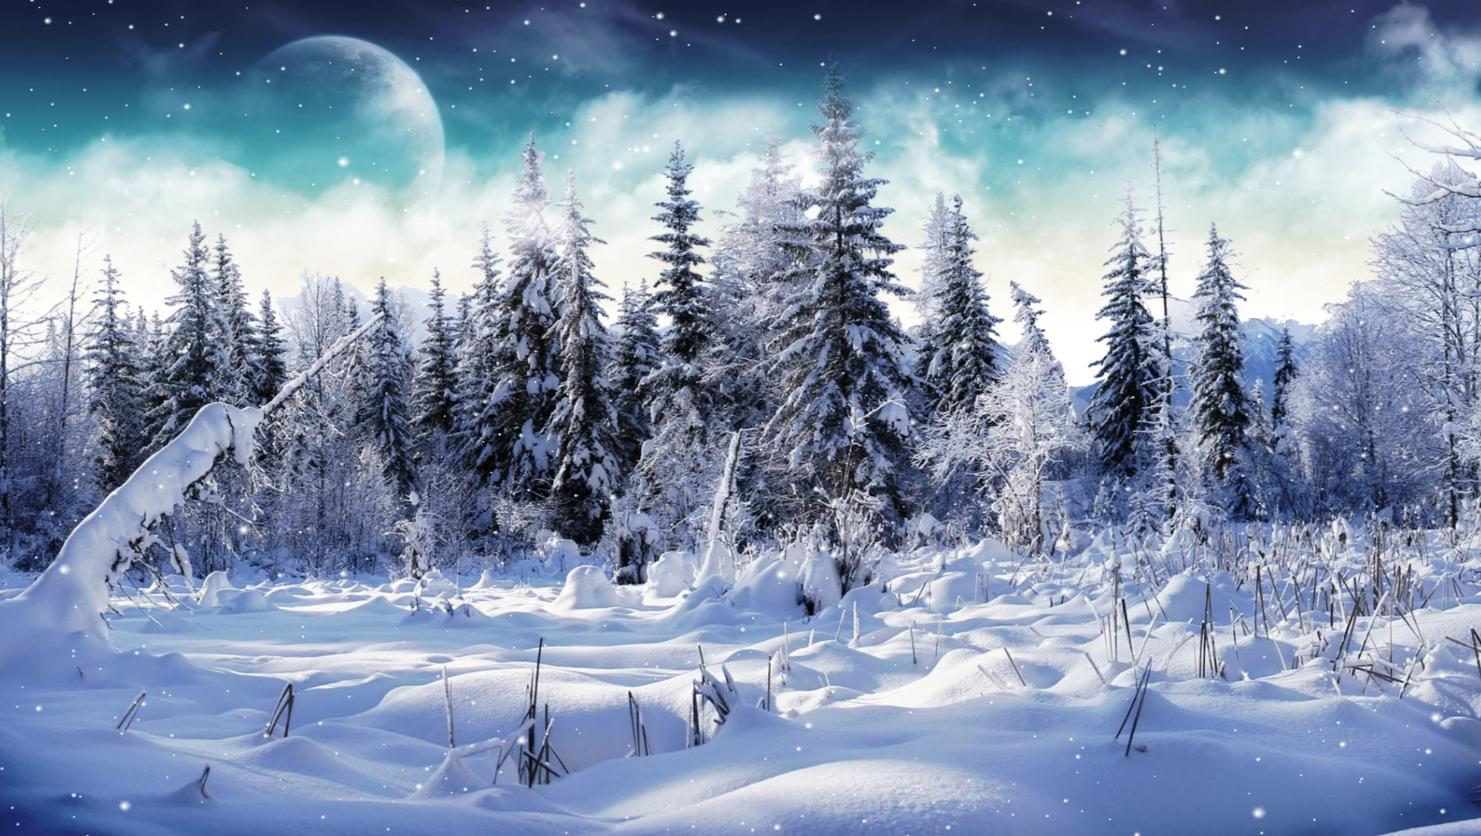 49+] Animated Winter Wallpaper - WallpaperSafari